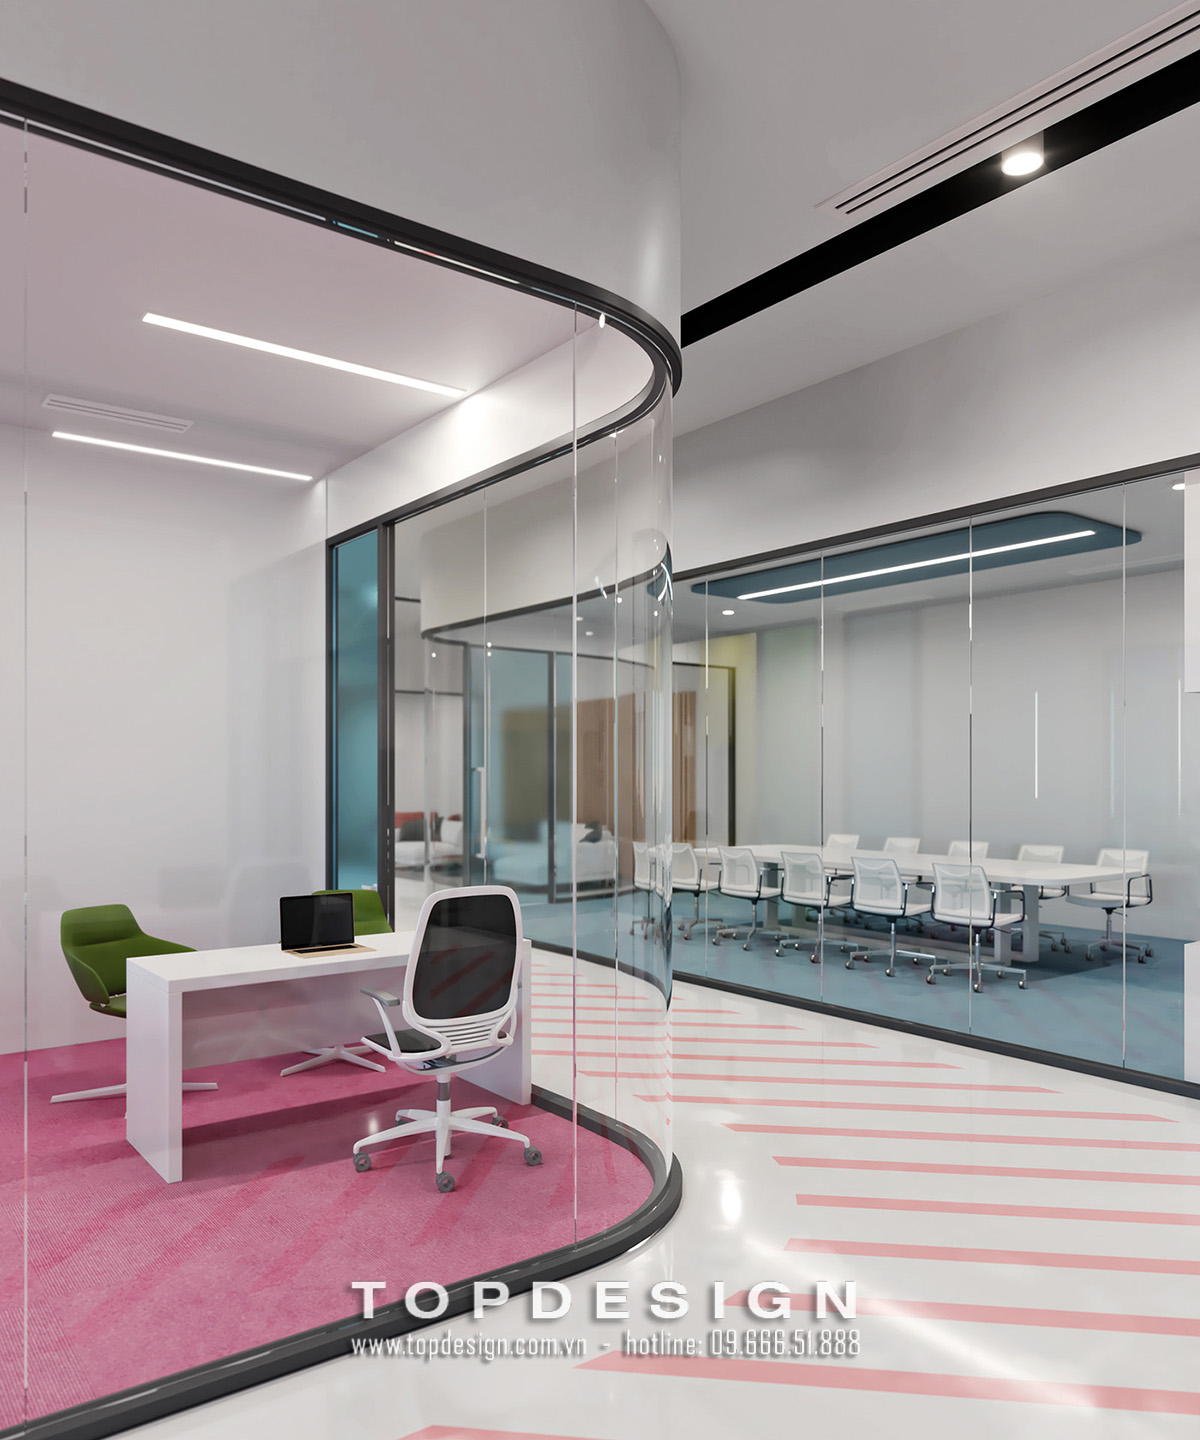 13.Mẫu thiết kế nội thất văn phòng IT 800m2 hiện đại, tinh tế_TOPDESIGN